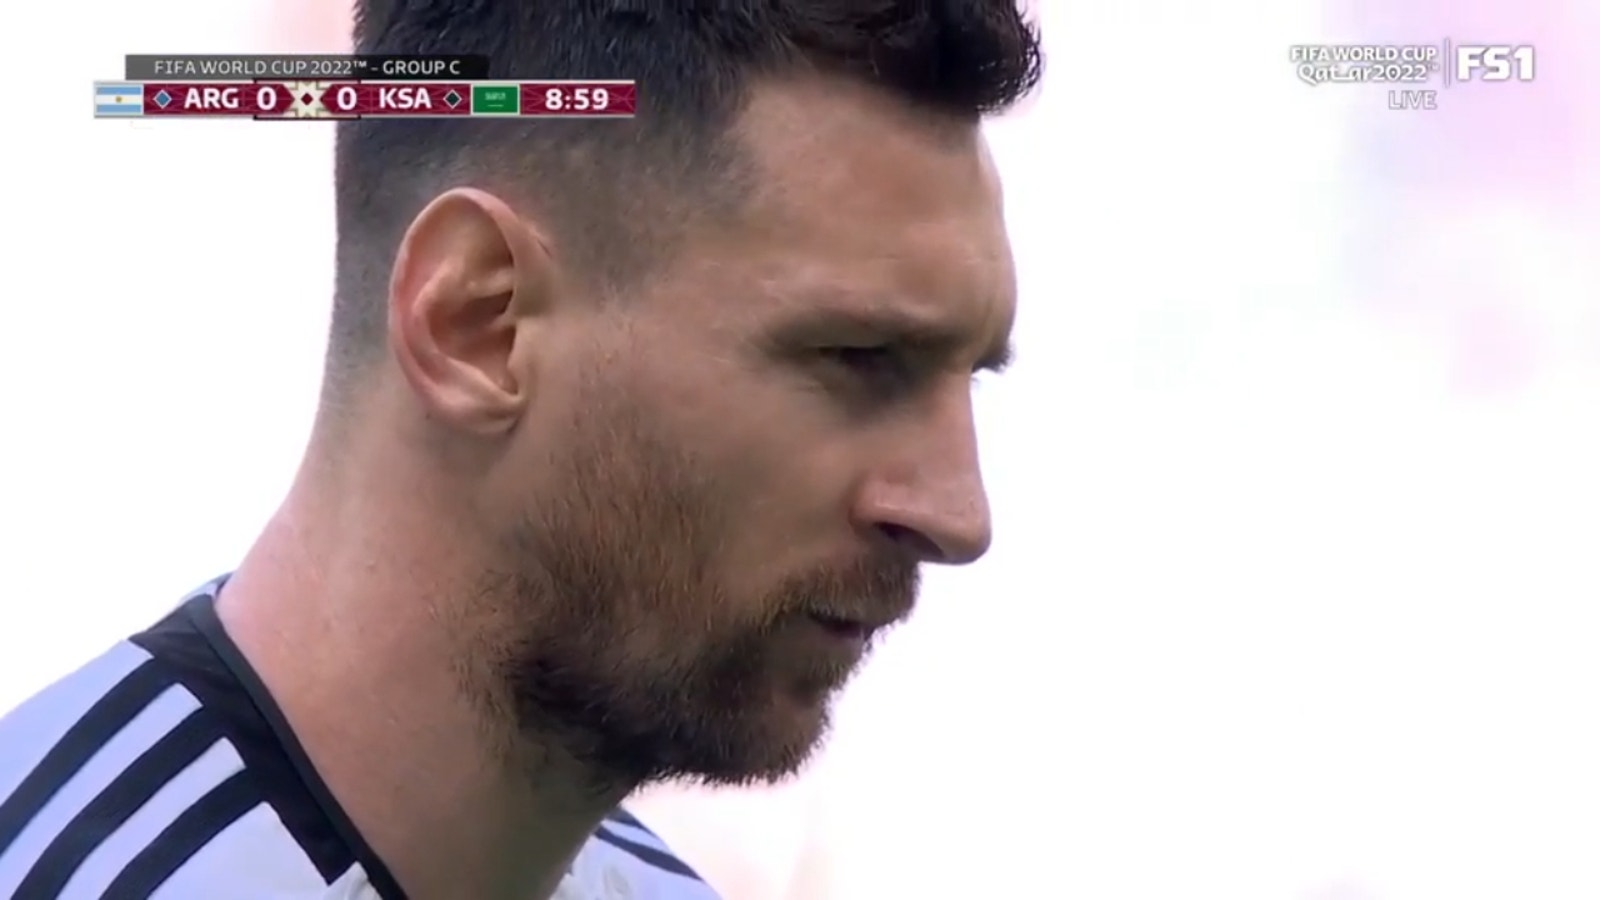 Lionel Messi ha segnato un rigore al 10 'per portare l'Argentina in vantaggio per 1-0 sull'Arabia Saudita.